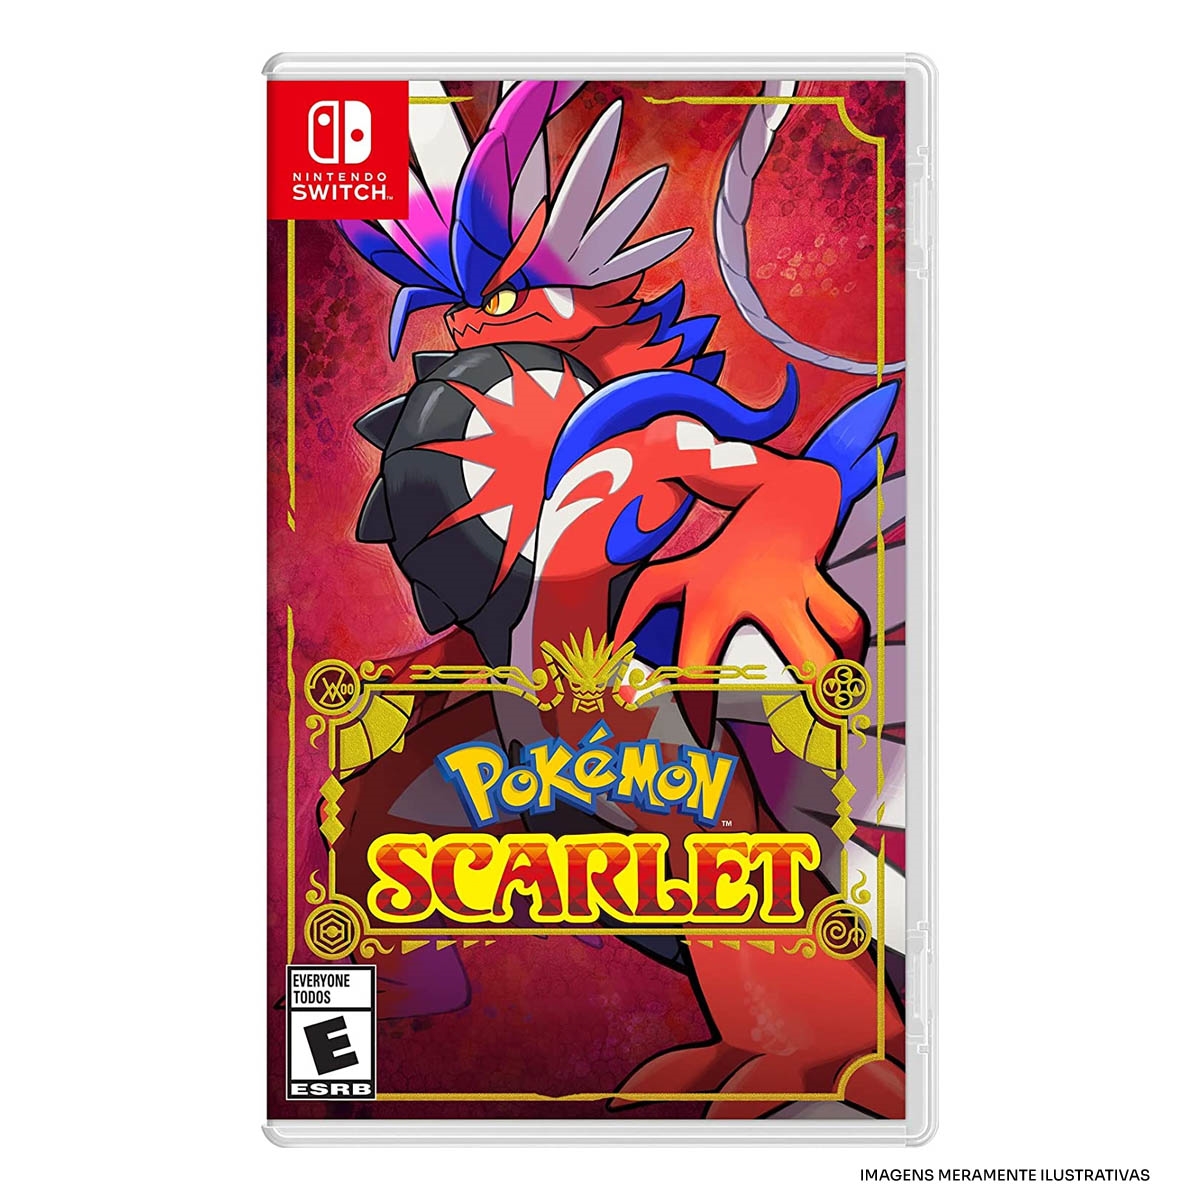 Pokémon Scarlet & Violet: Veja a lista de todos os Pokémon da